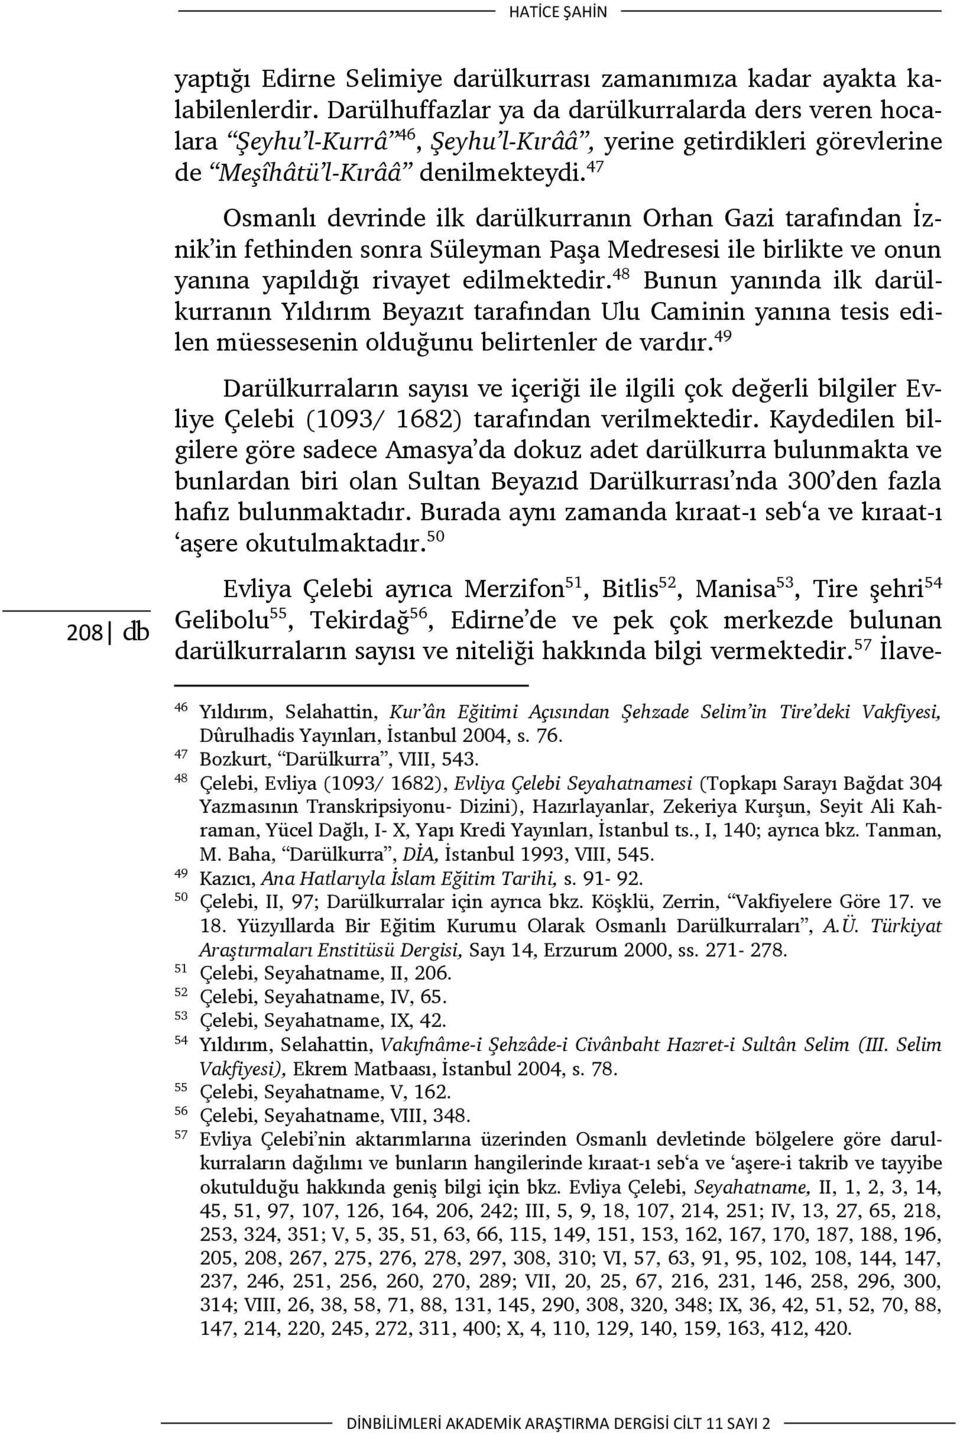 47 Osmanlı devrinde ilk darülkurranın Orhan Gazi tarafından İznik in fethinden sonra Süleyman Paşa Medresesi ile birlikte ve onun yanına yapıldığı rivayet edilmektedir.